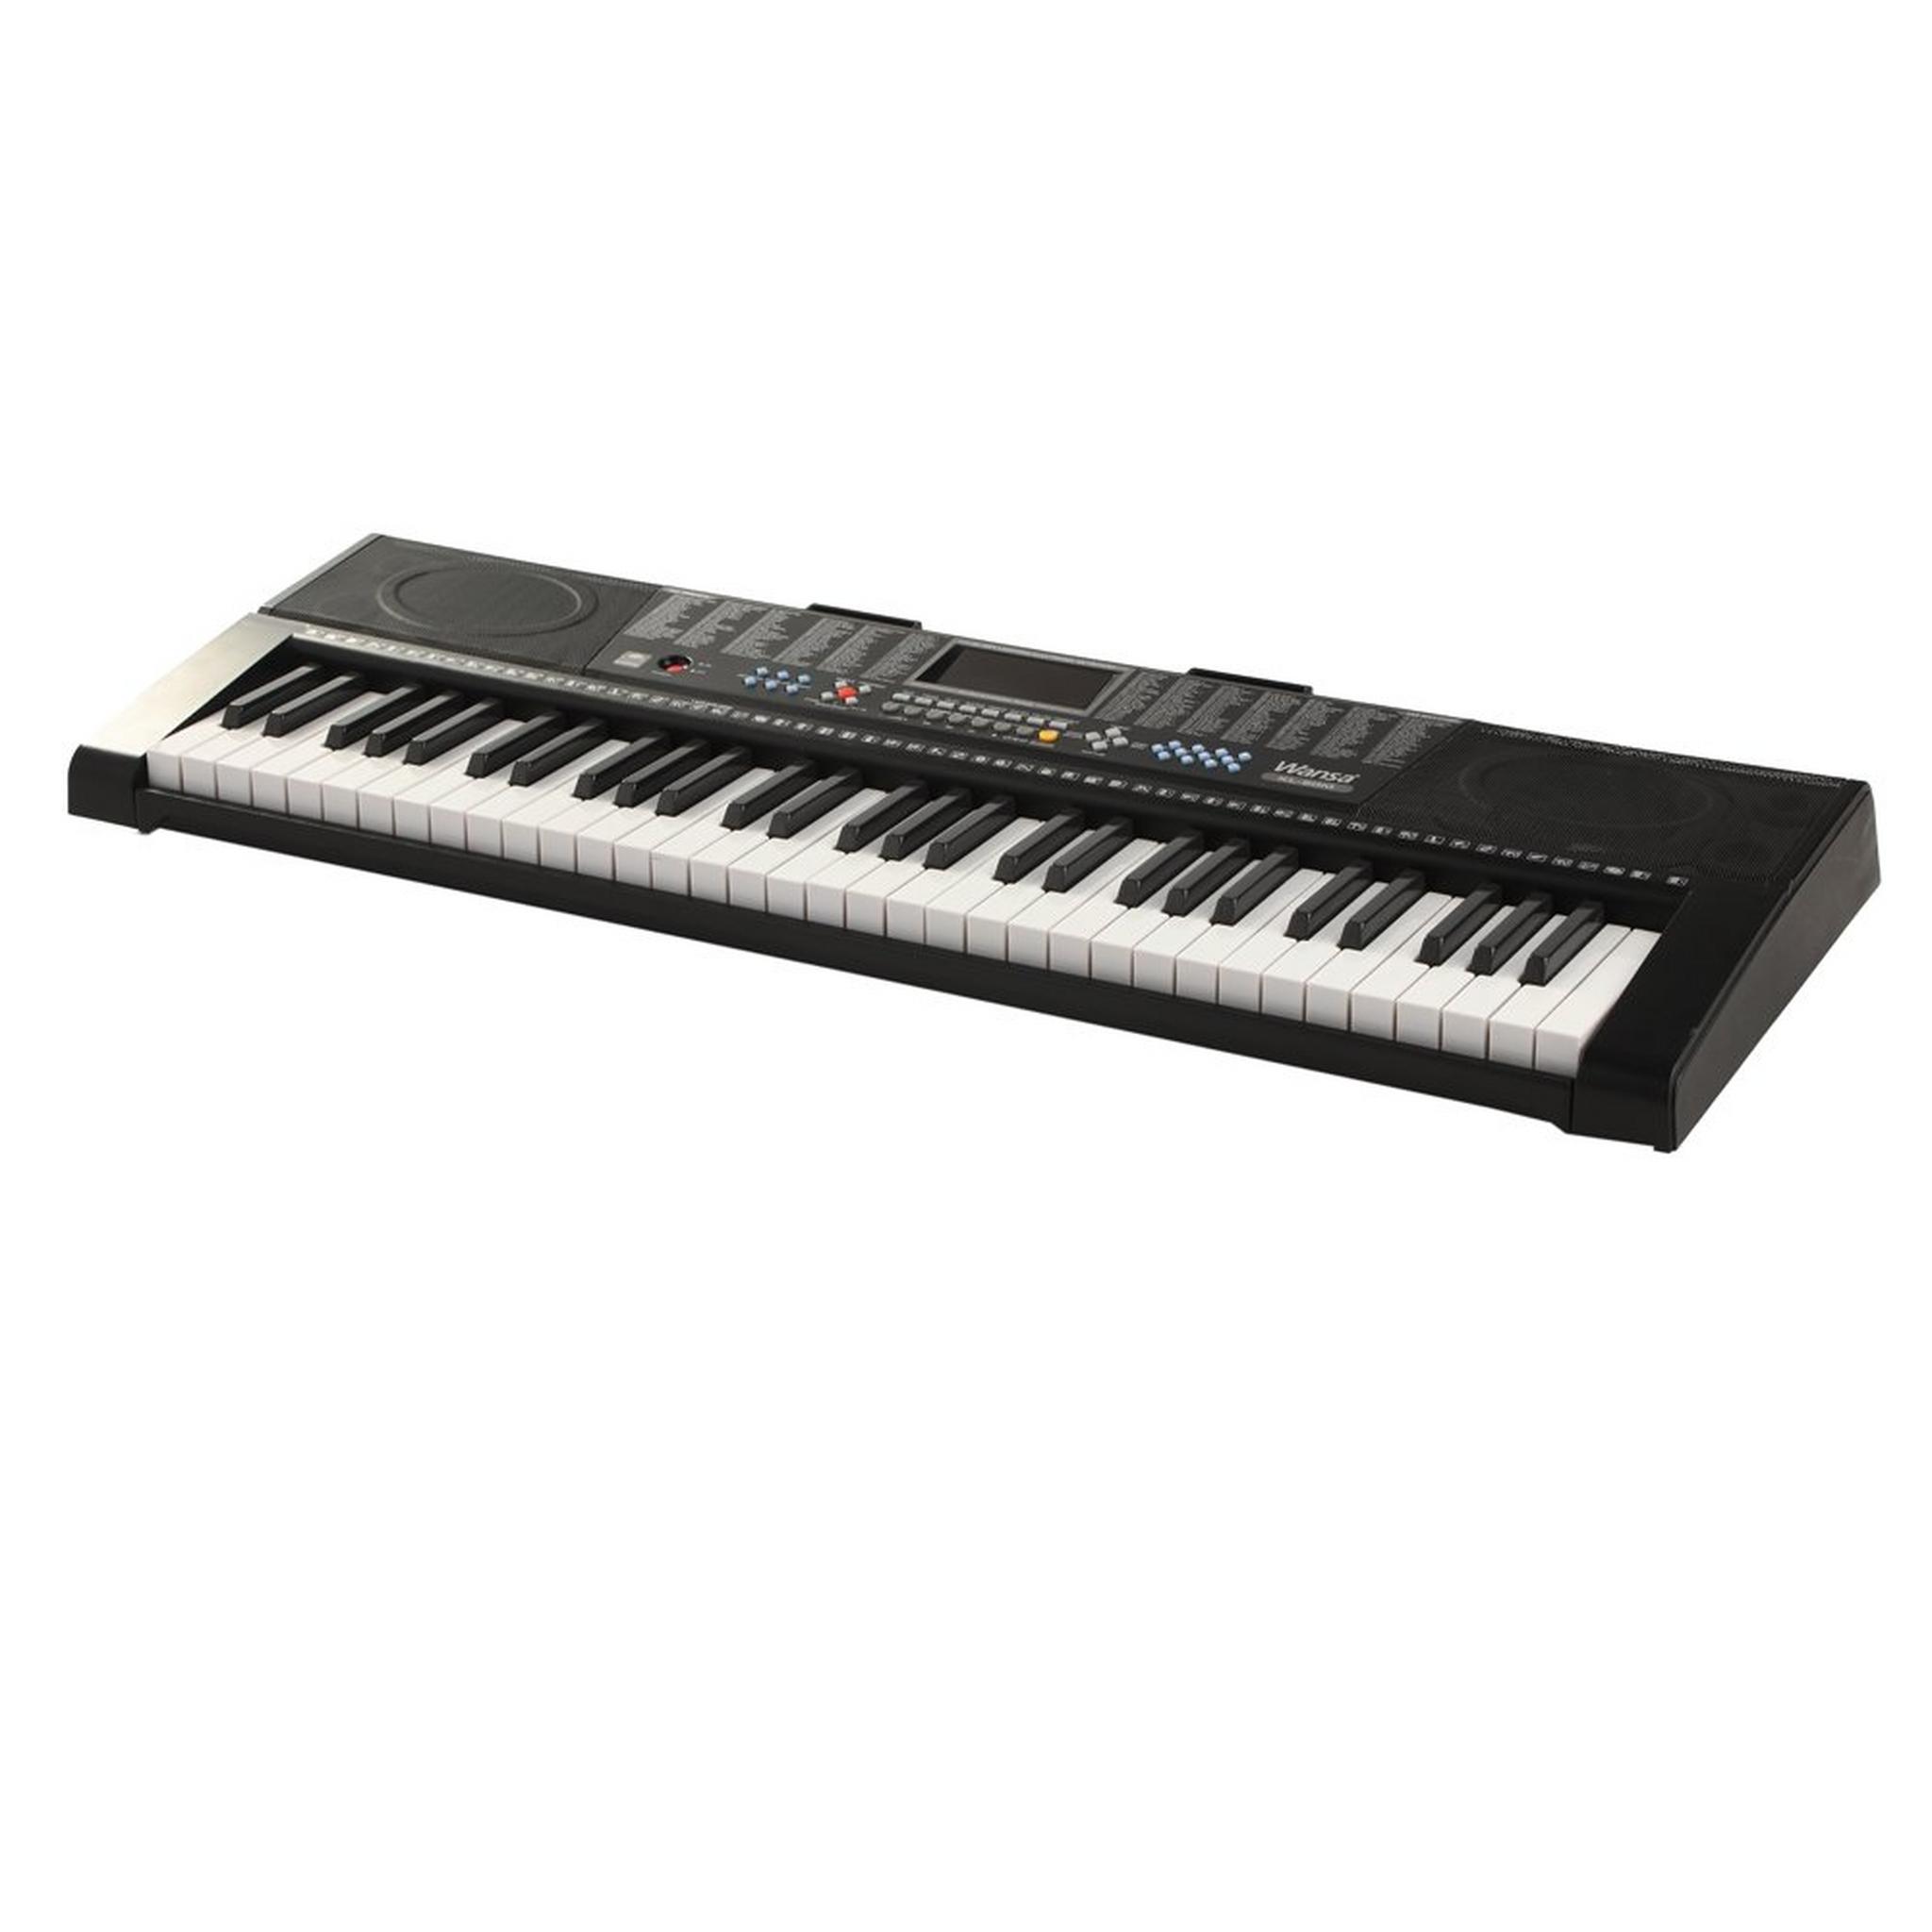 لوحة المفاتيح الموسيقية ٦١ مفتاح من ونسا - KL-90M